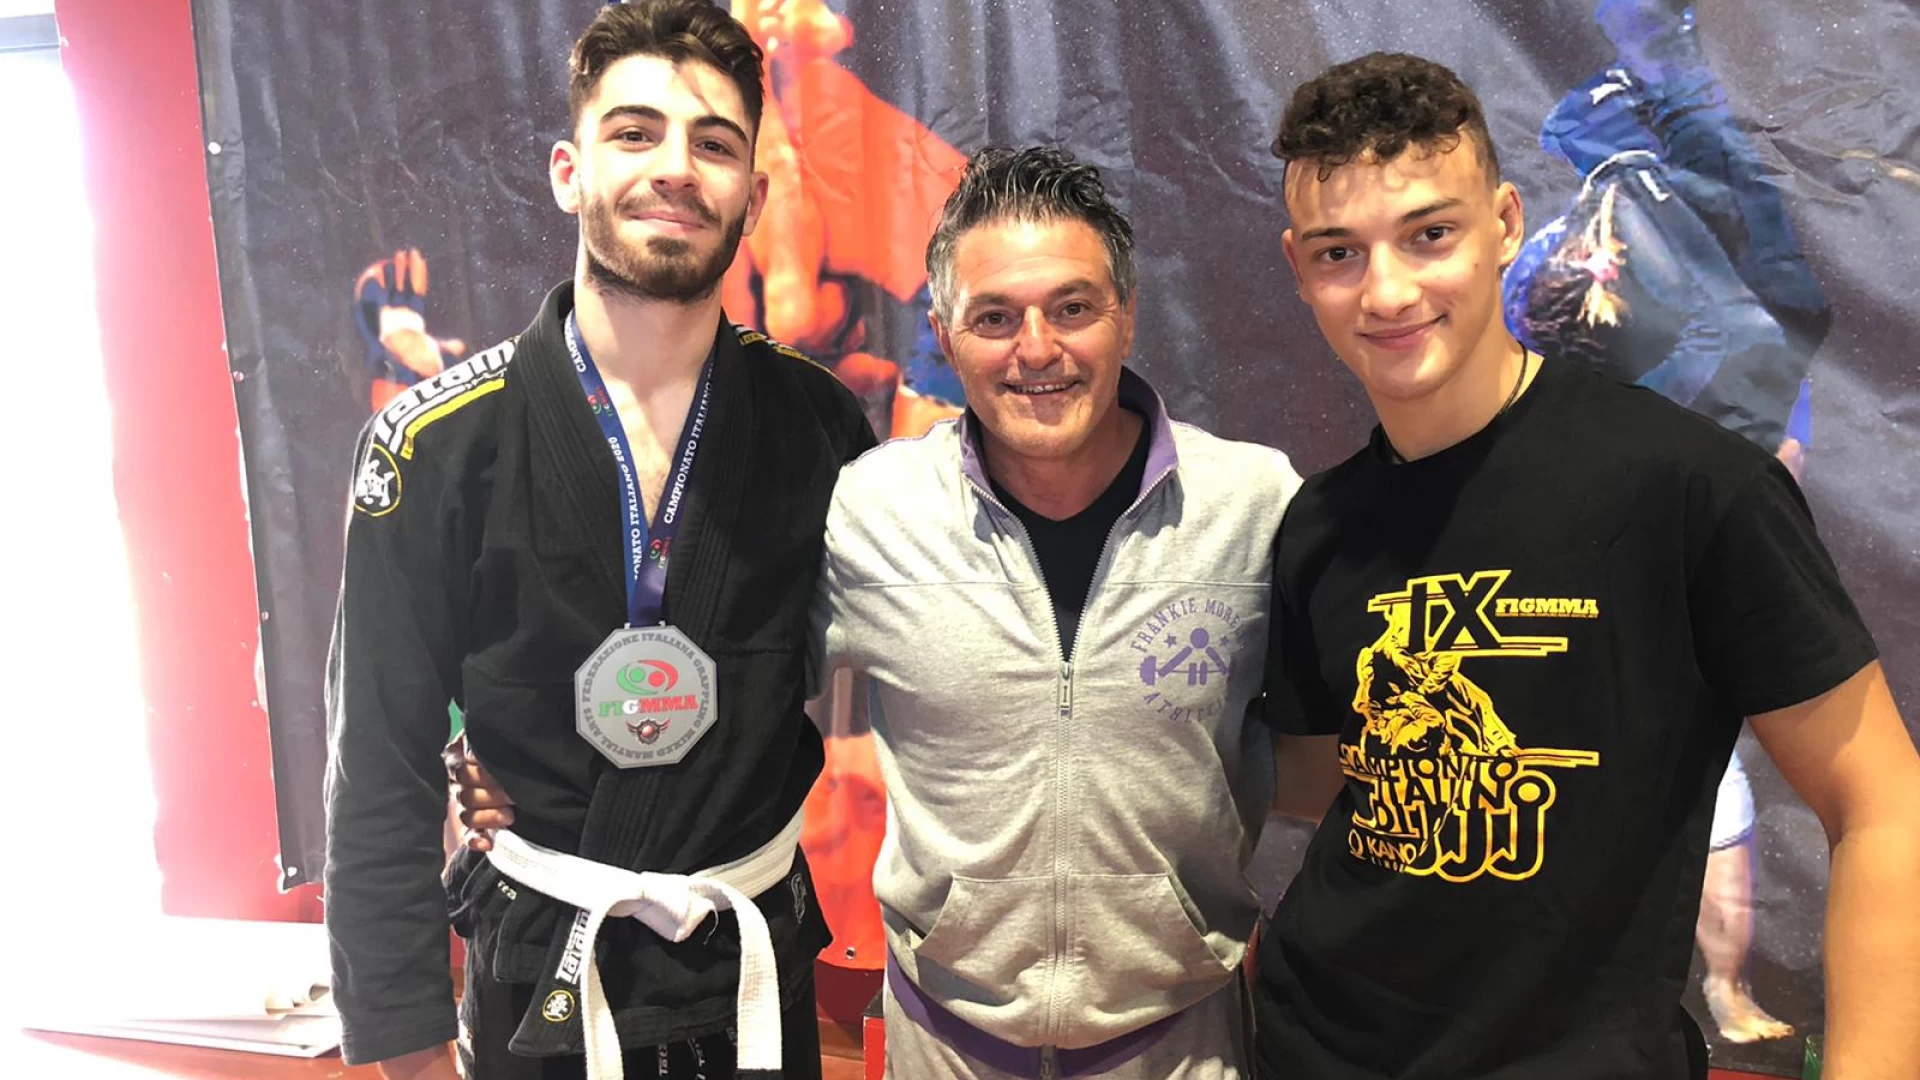 Titolo: Campionato italiano di BJJ Grande risultato per l’A.S Wellness di Monteroduni al campionato italiano di Brasilian Jiu Jitsu svoltosi sabato presso il Palatorrino di Roma.